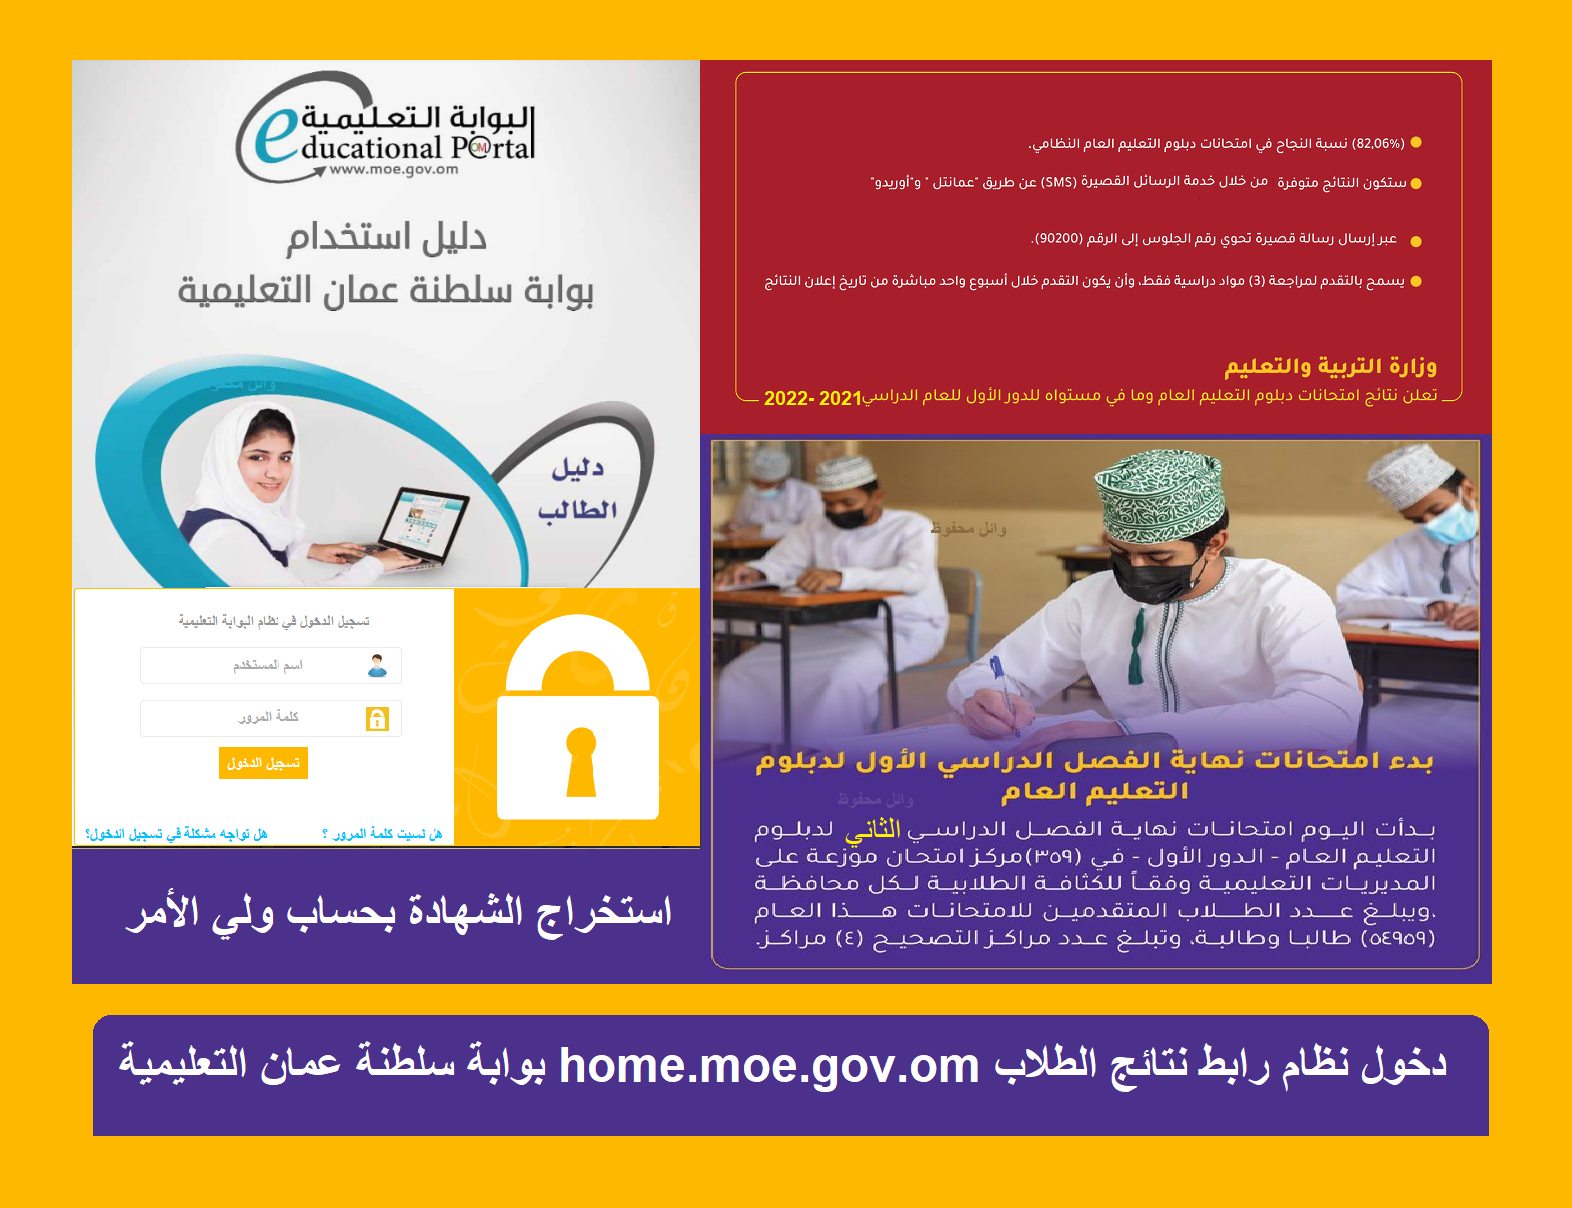 بوابة سلطنة عمان التعليمية home.moe.gov.om لنتائج الطلاب رابط دخول استخراج الشهادة